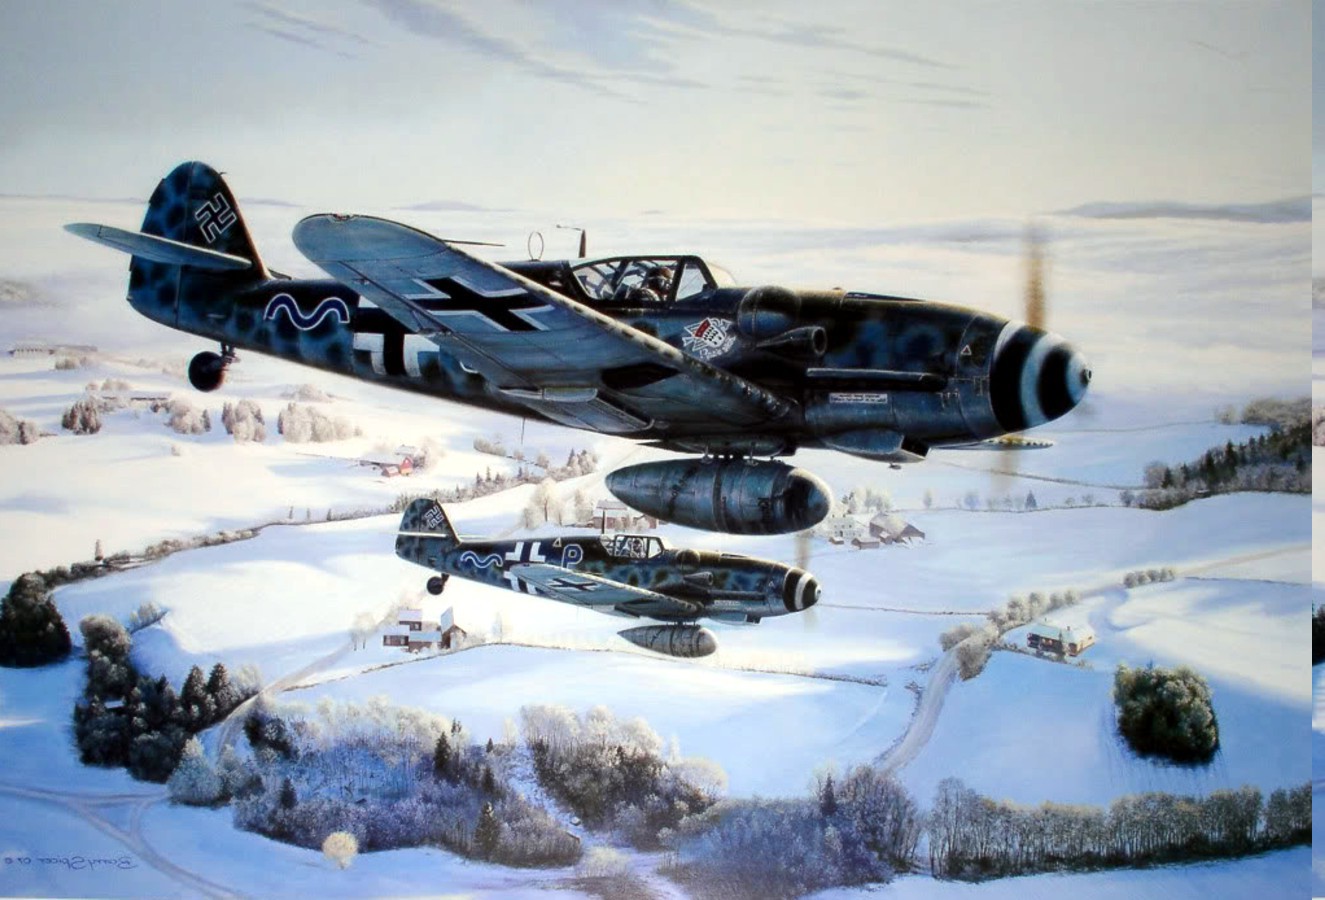 Messerschmitt, Messerschmitt Bf 109, World War II, Germany, Military, Aircraft, Military Aircraft, Luftwaffe, Airplane Wallpaper